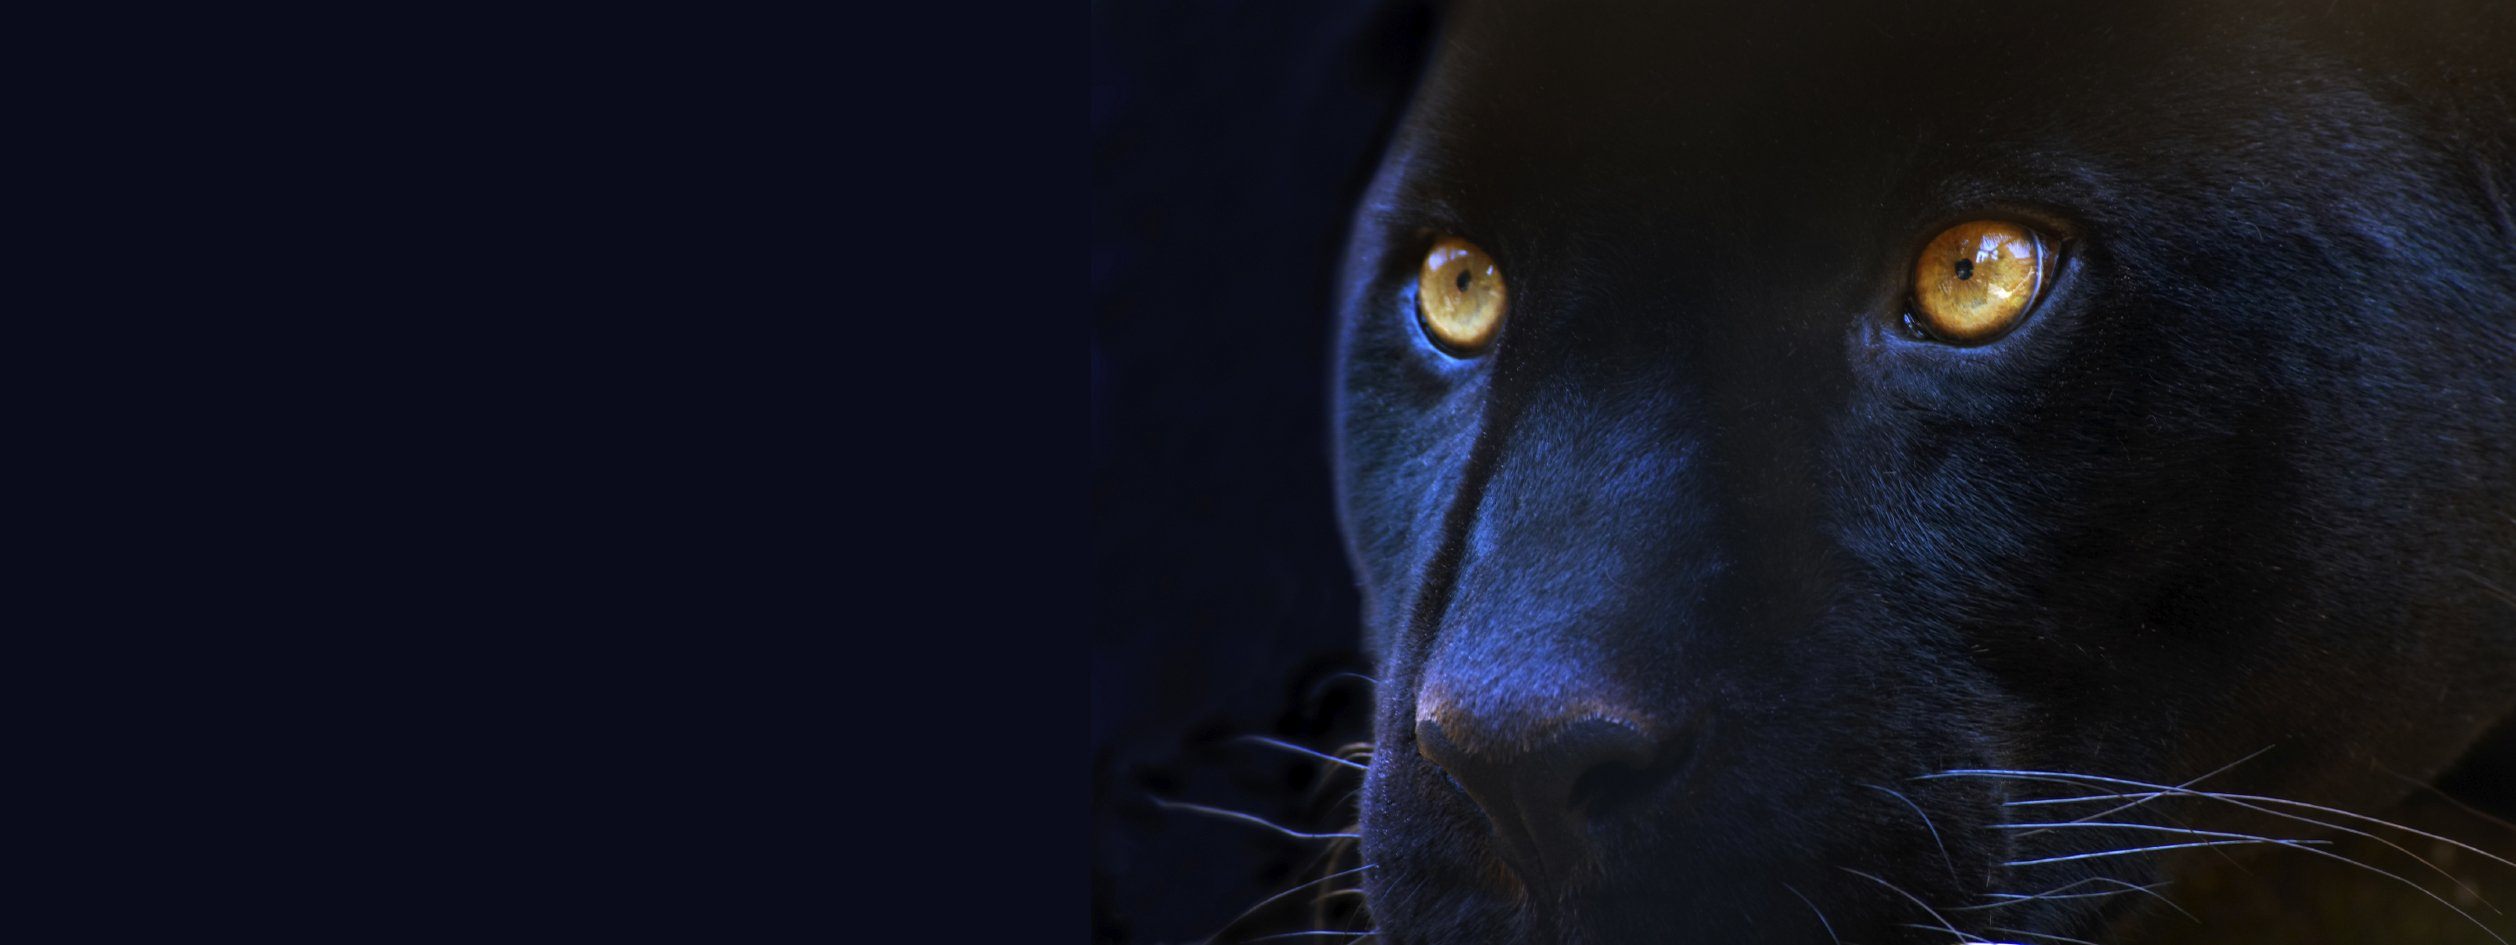 фанфик глаза пантеры светятся в ночи фото 11